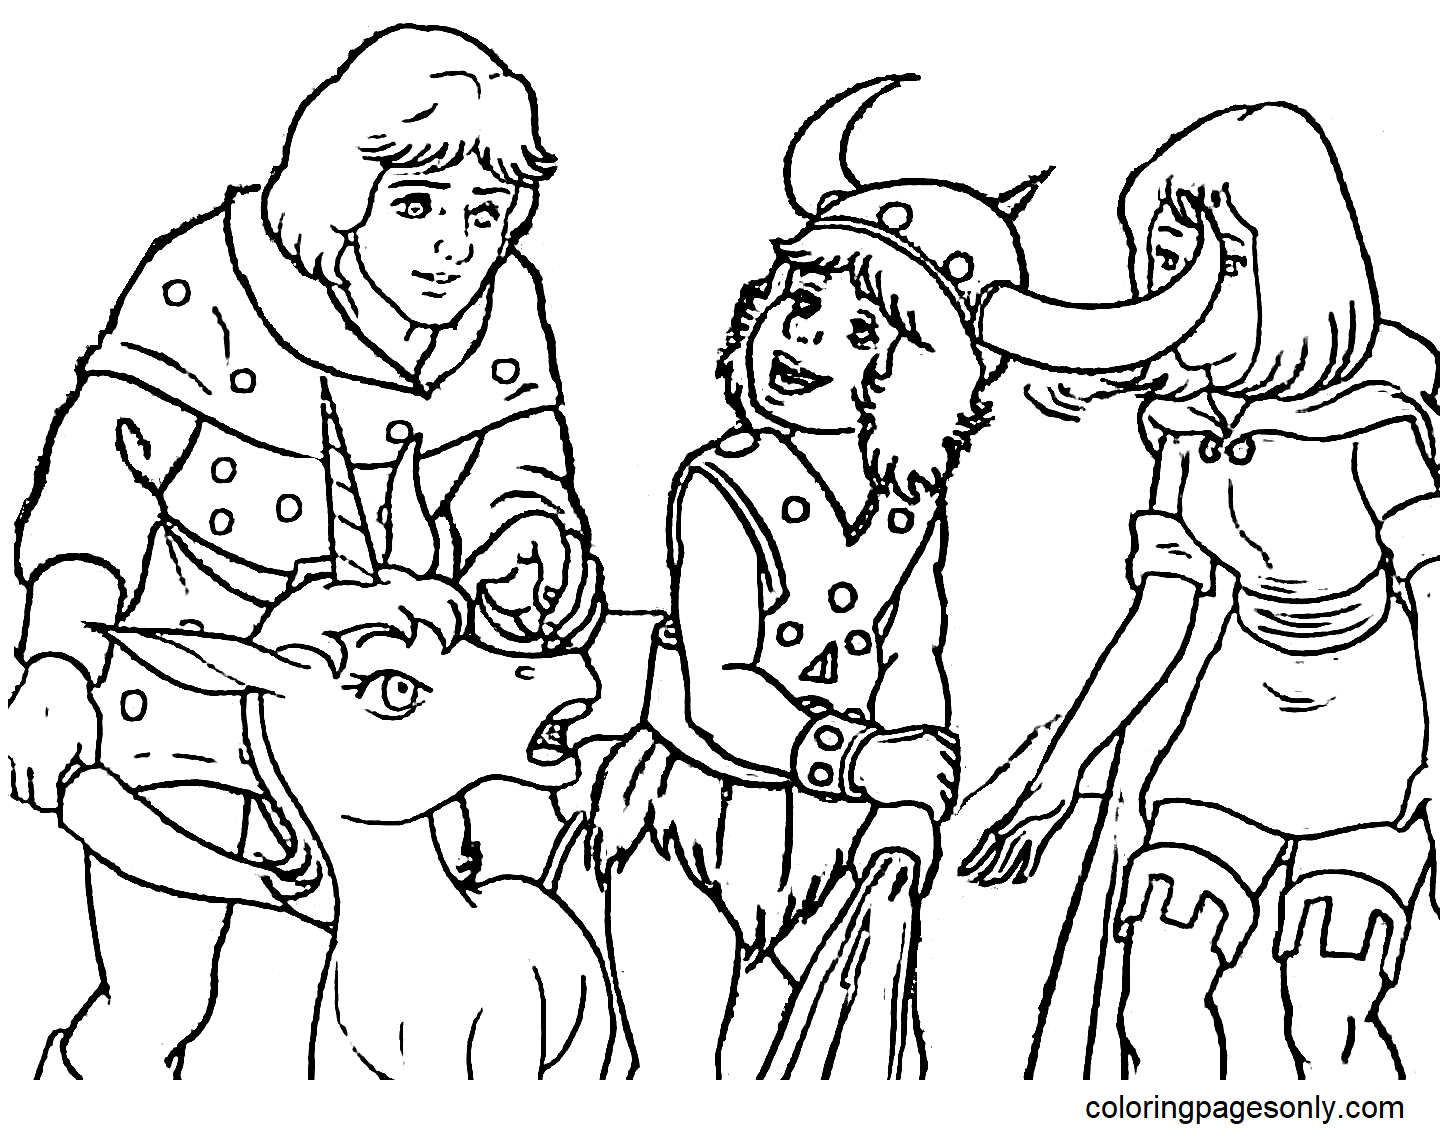 《龙与地下城》中的游侠汉克、野蛮人鲍比、小偷希拉和独角兽尤尼